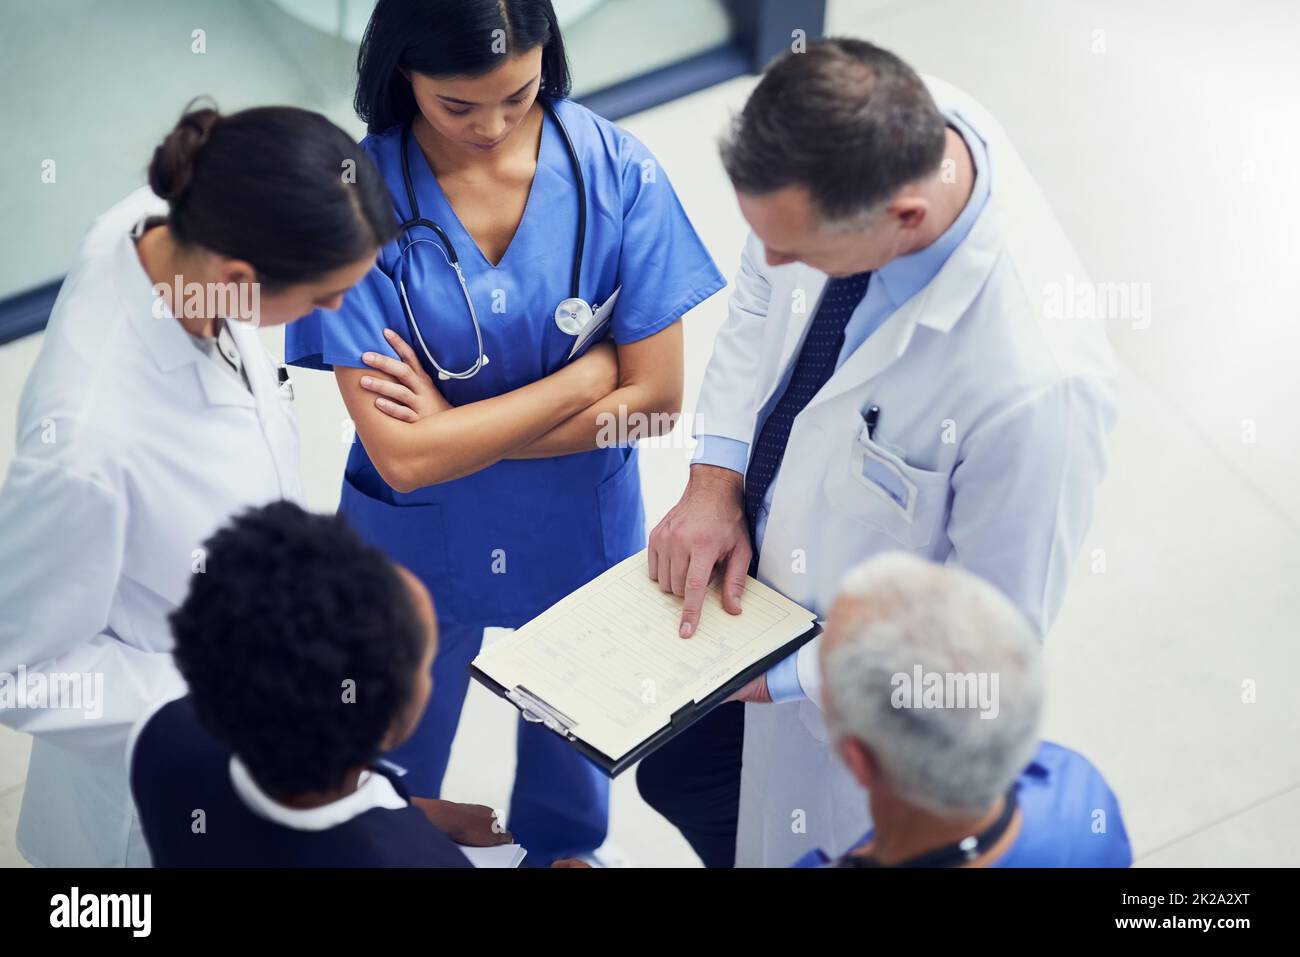 Gibt die Dosierung für diesen Patienten an. Aufnahme einer Gruppe von Ärzten, die sich über eine Krankenakte unterhalten, während sie in einem Krankenhaus stehen. Stockfoto